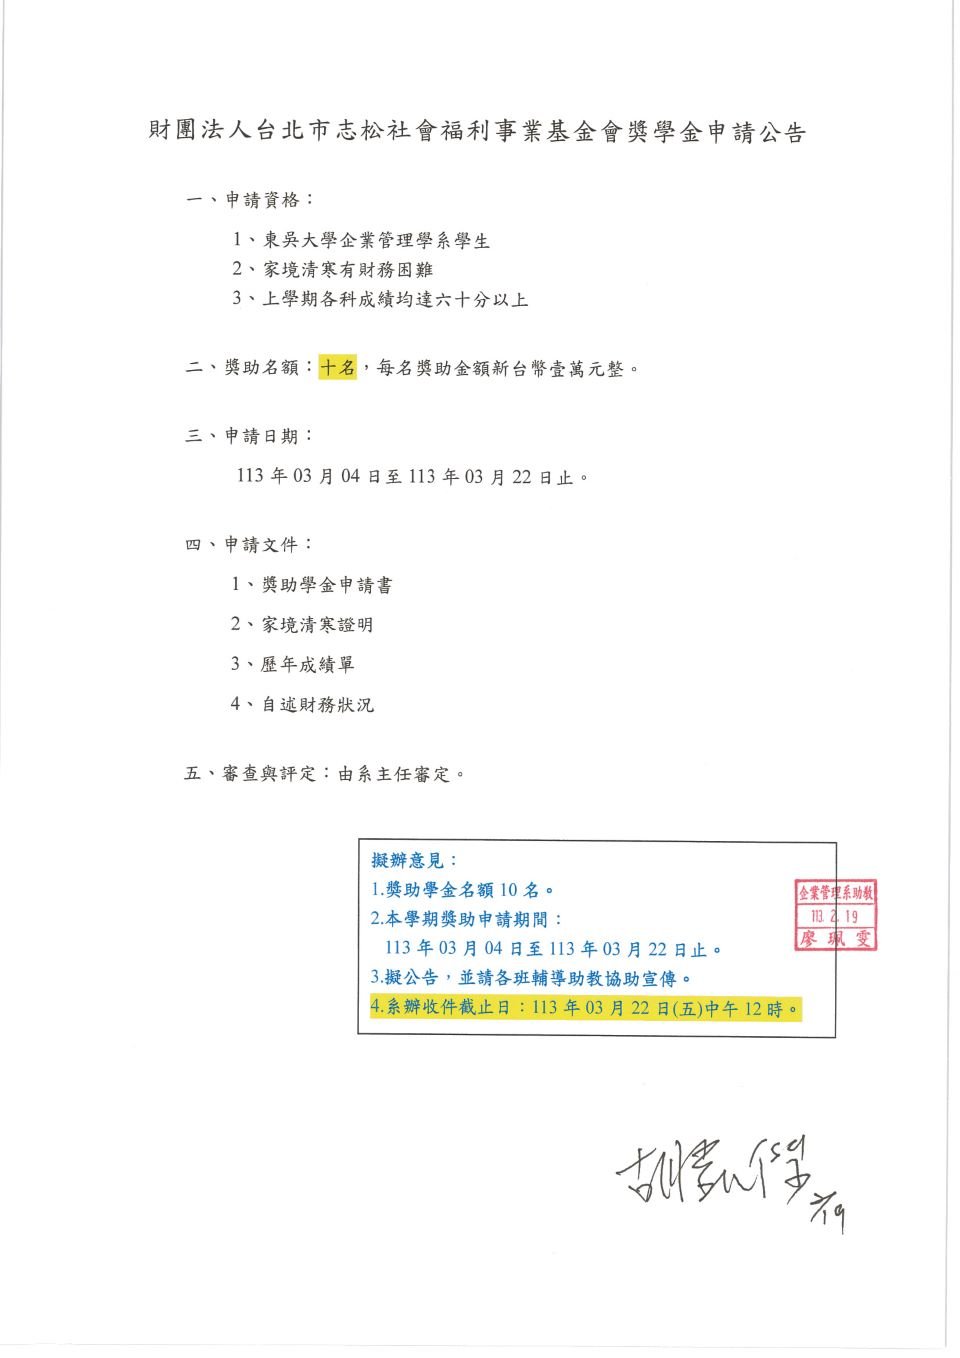 1122-志松社會福利事業基金會獎學金_頁面_1